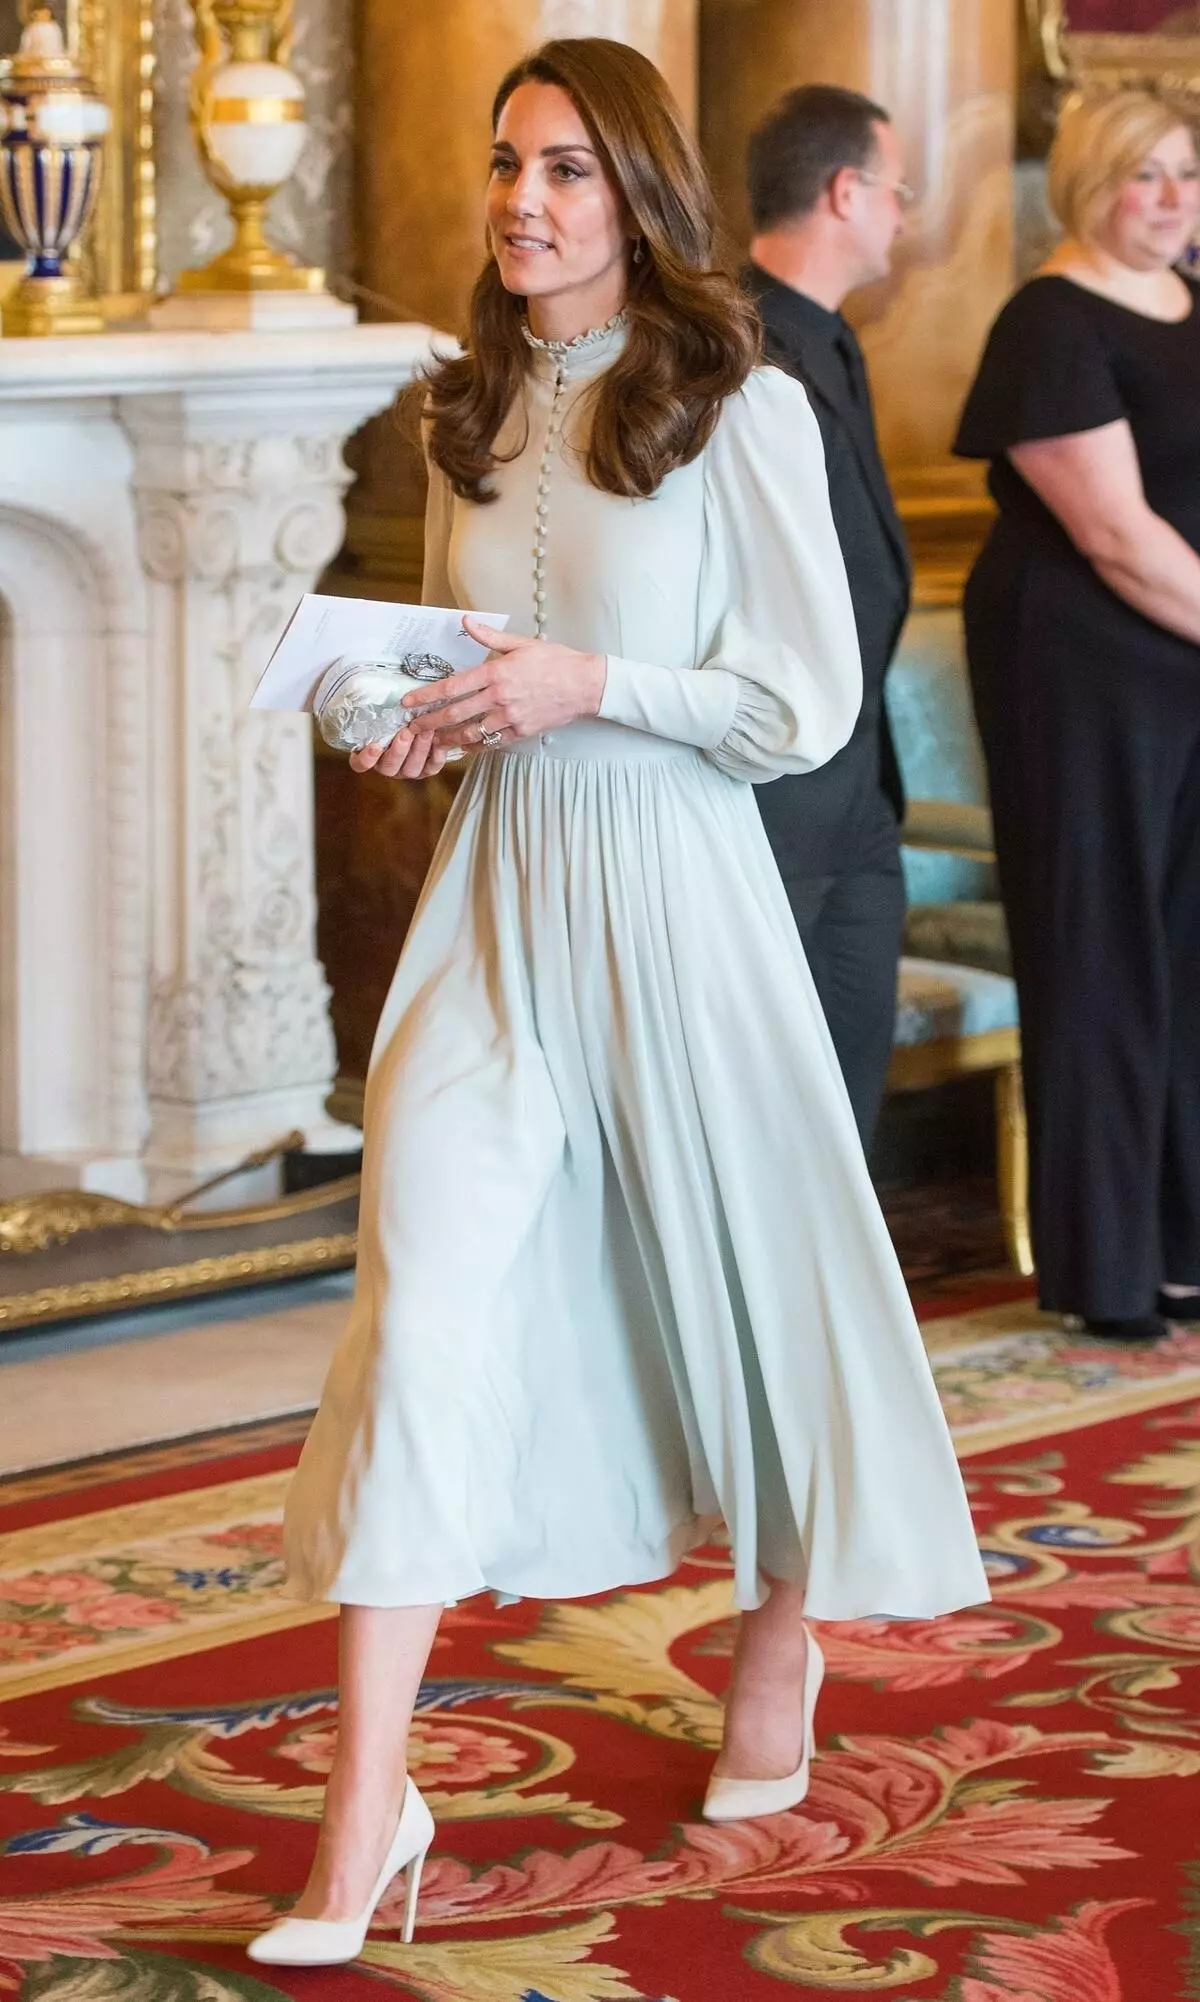 Fir déi éischte Kéier an enger laanger Zäit: Megan Planz a Kate Middleton zesummen bei der Feier zu Éiere vum Prënz Charles 143556_1